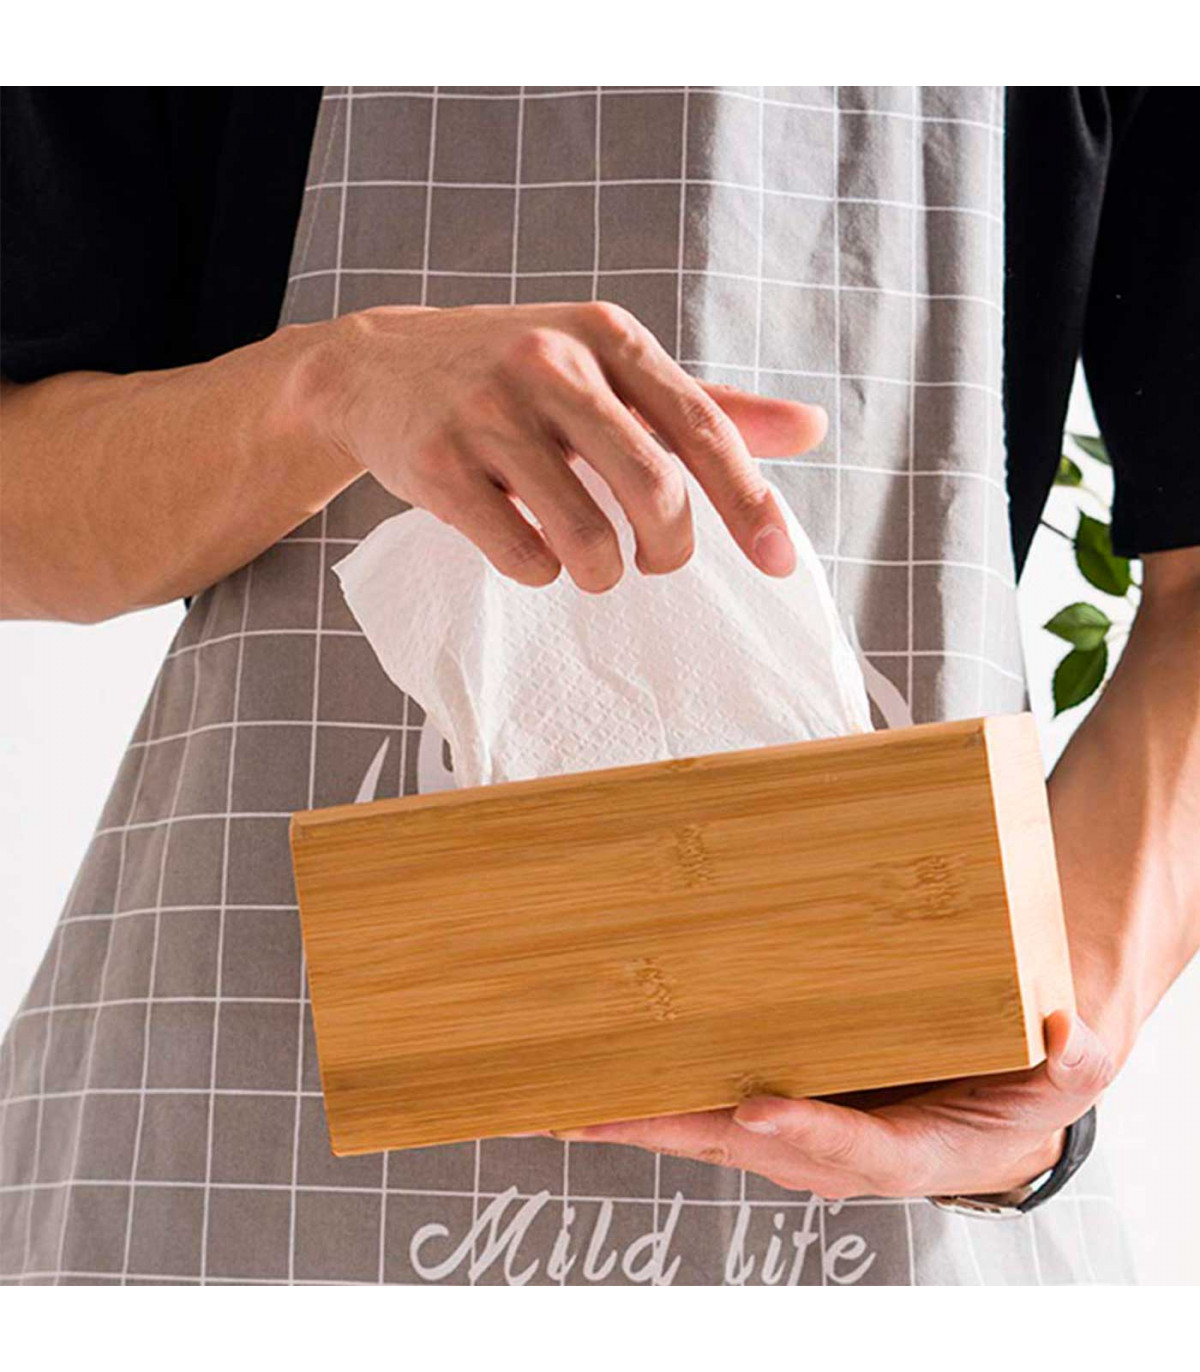 Tradineur - Caja de bambú para pañuelos, dispensador de pañuelos de papel  con base extraíble, baño, dormitorio, cocina, 23 x 11